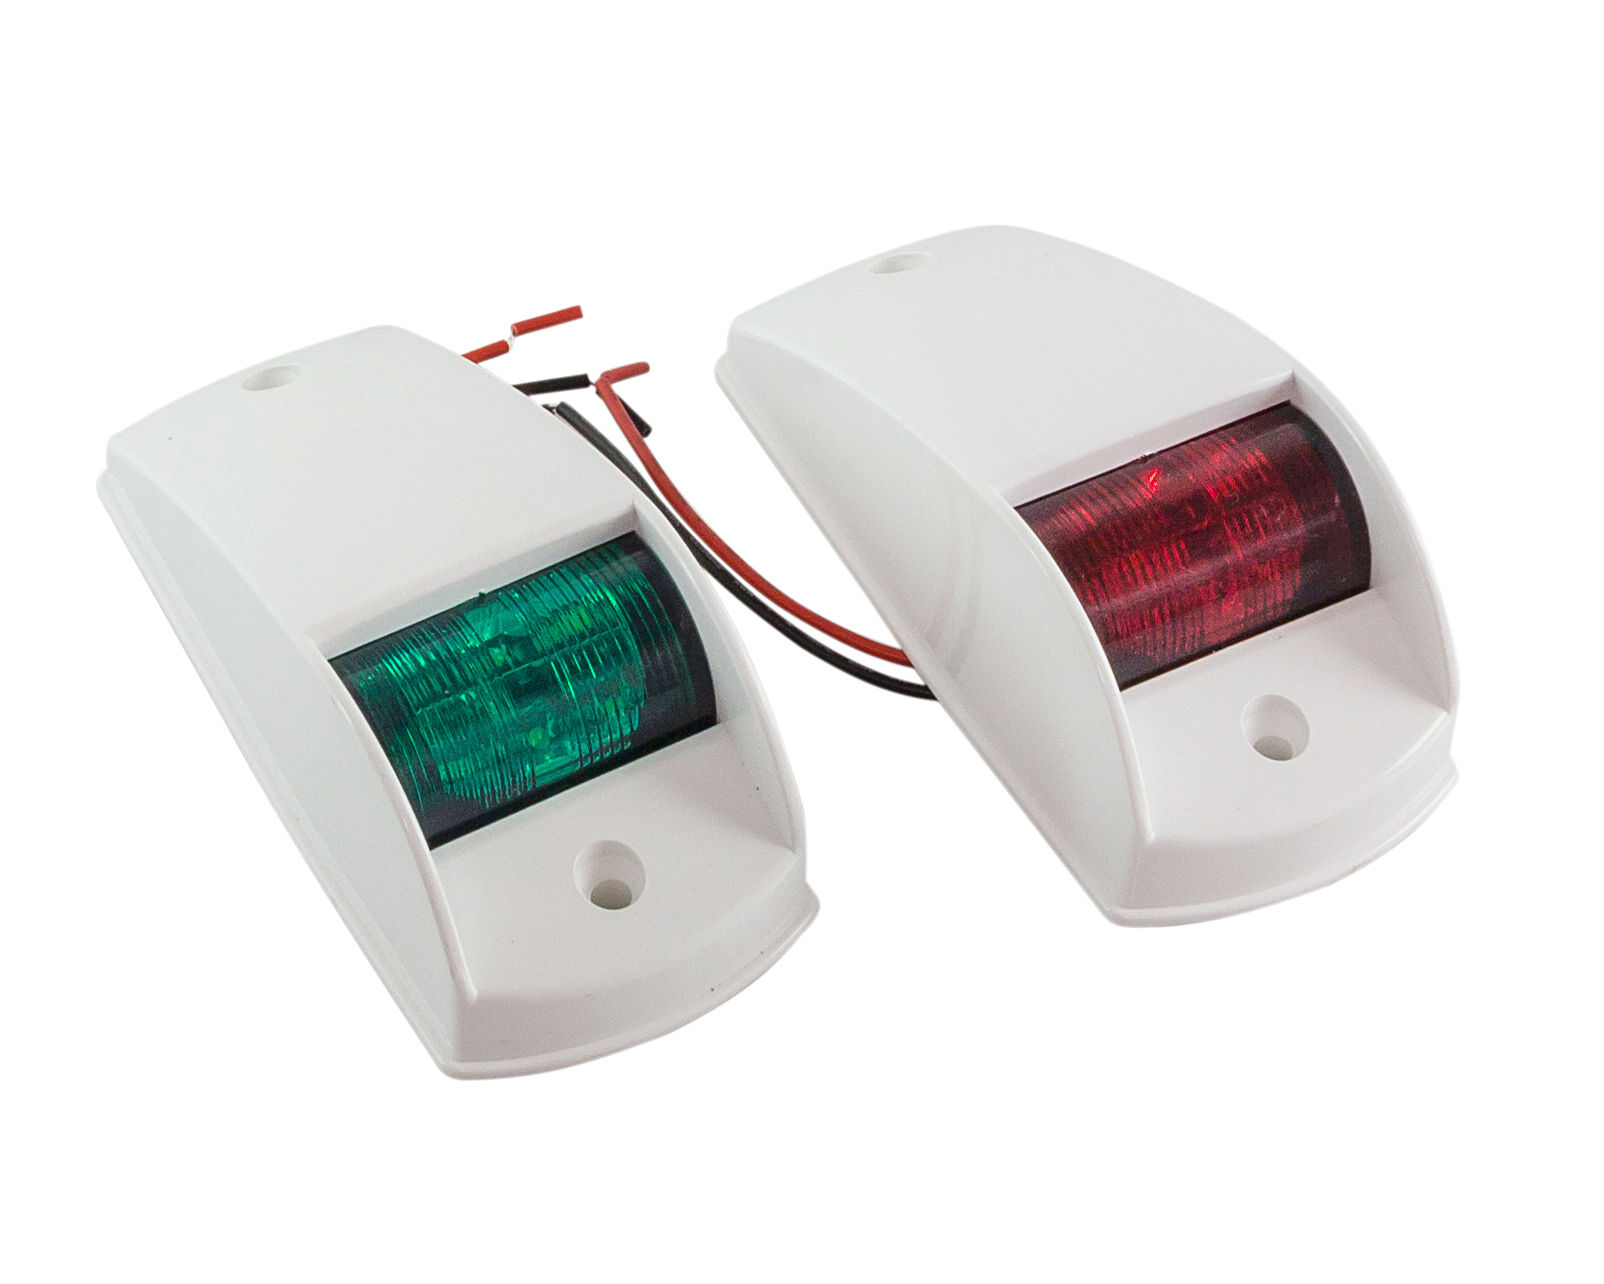 Огни ходовые комплект (красный, зеленый) LED, бел. корпус